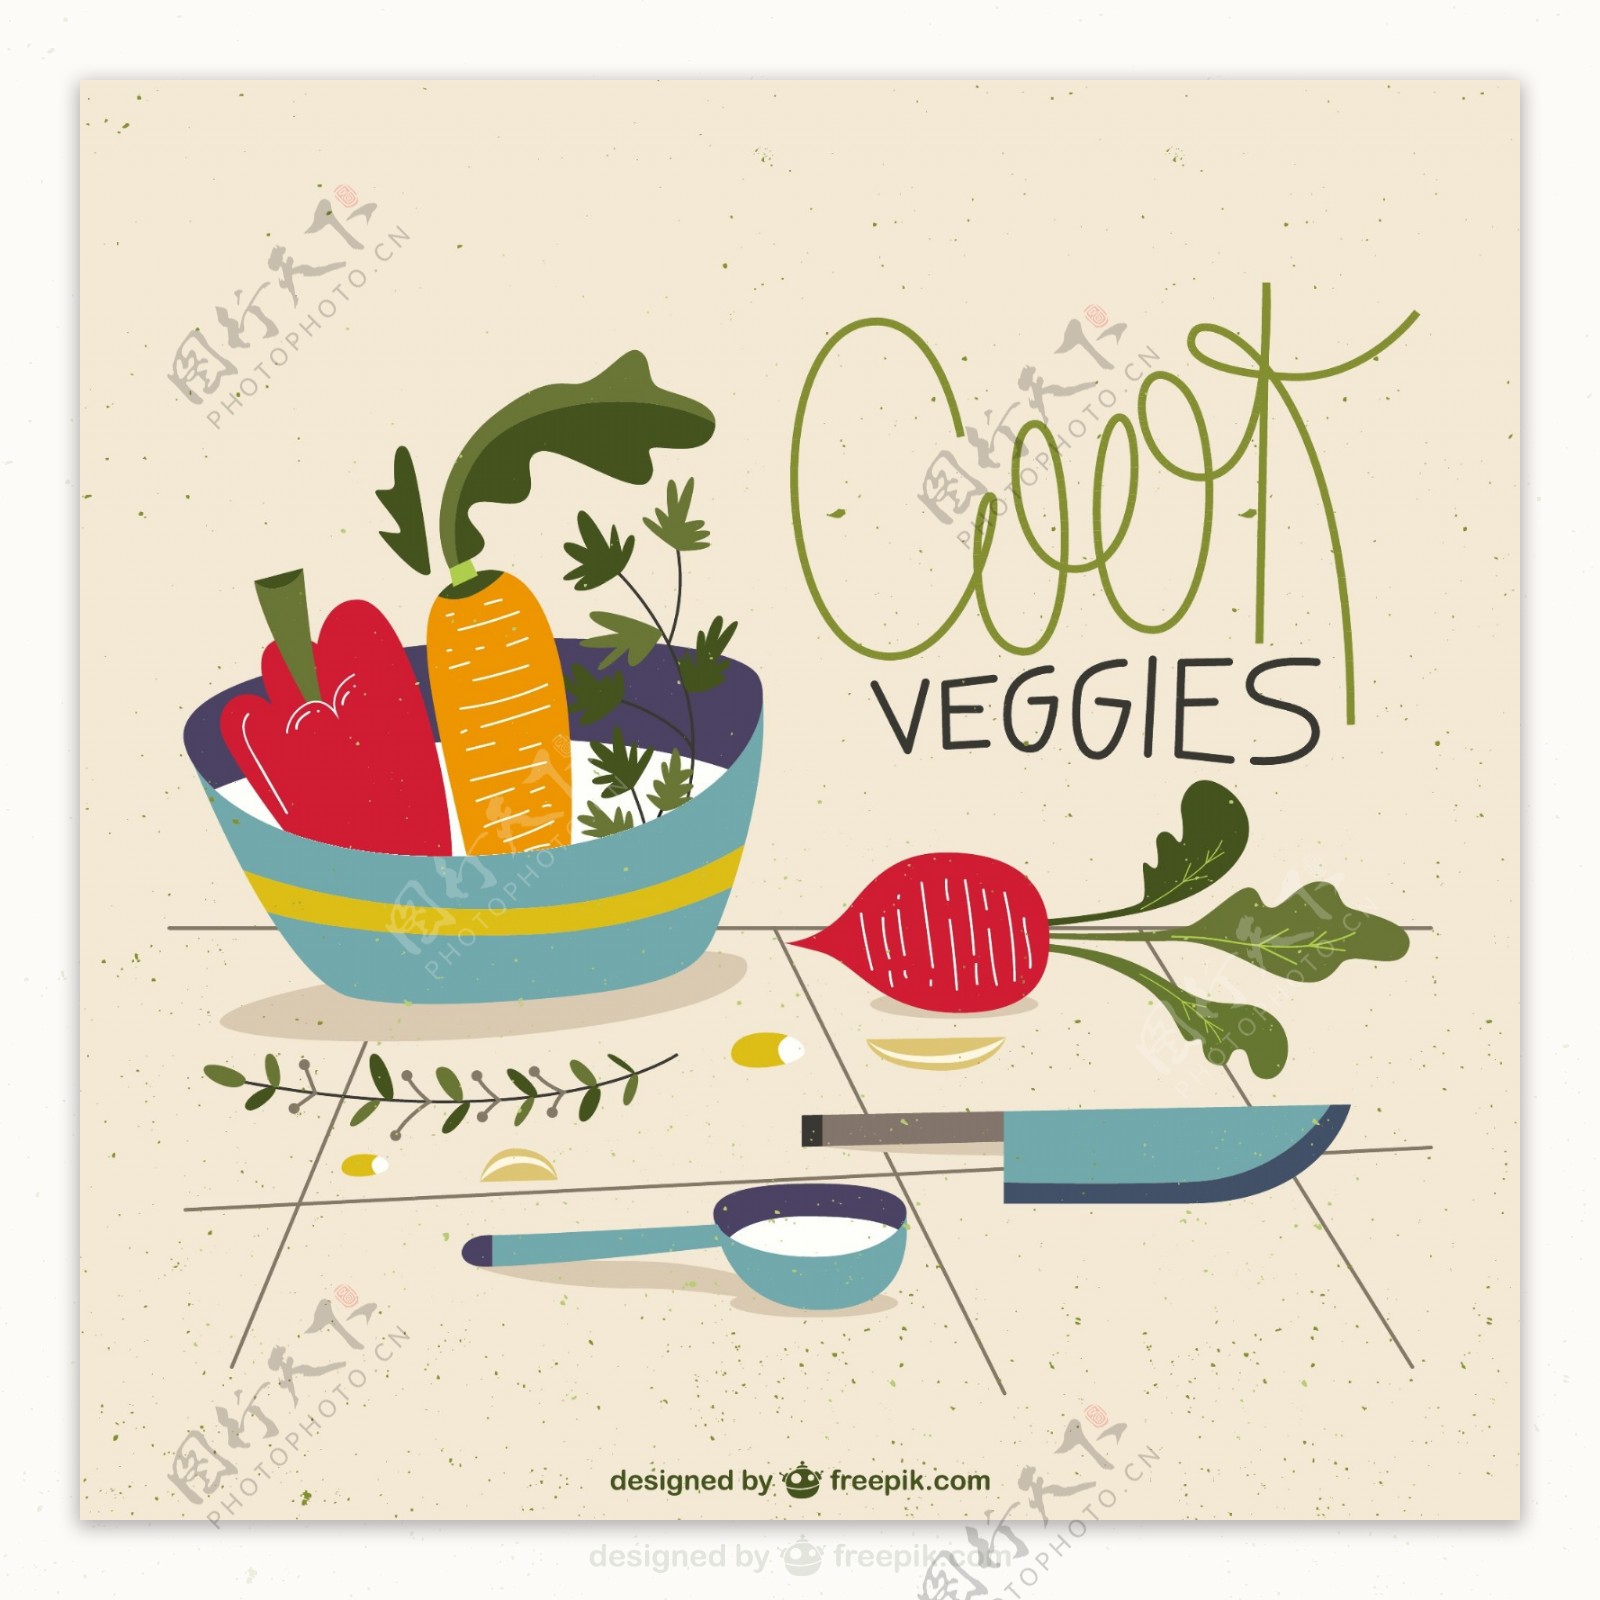 蔬菜和厨房用具